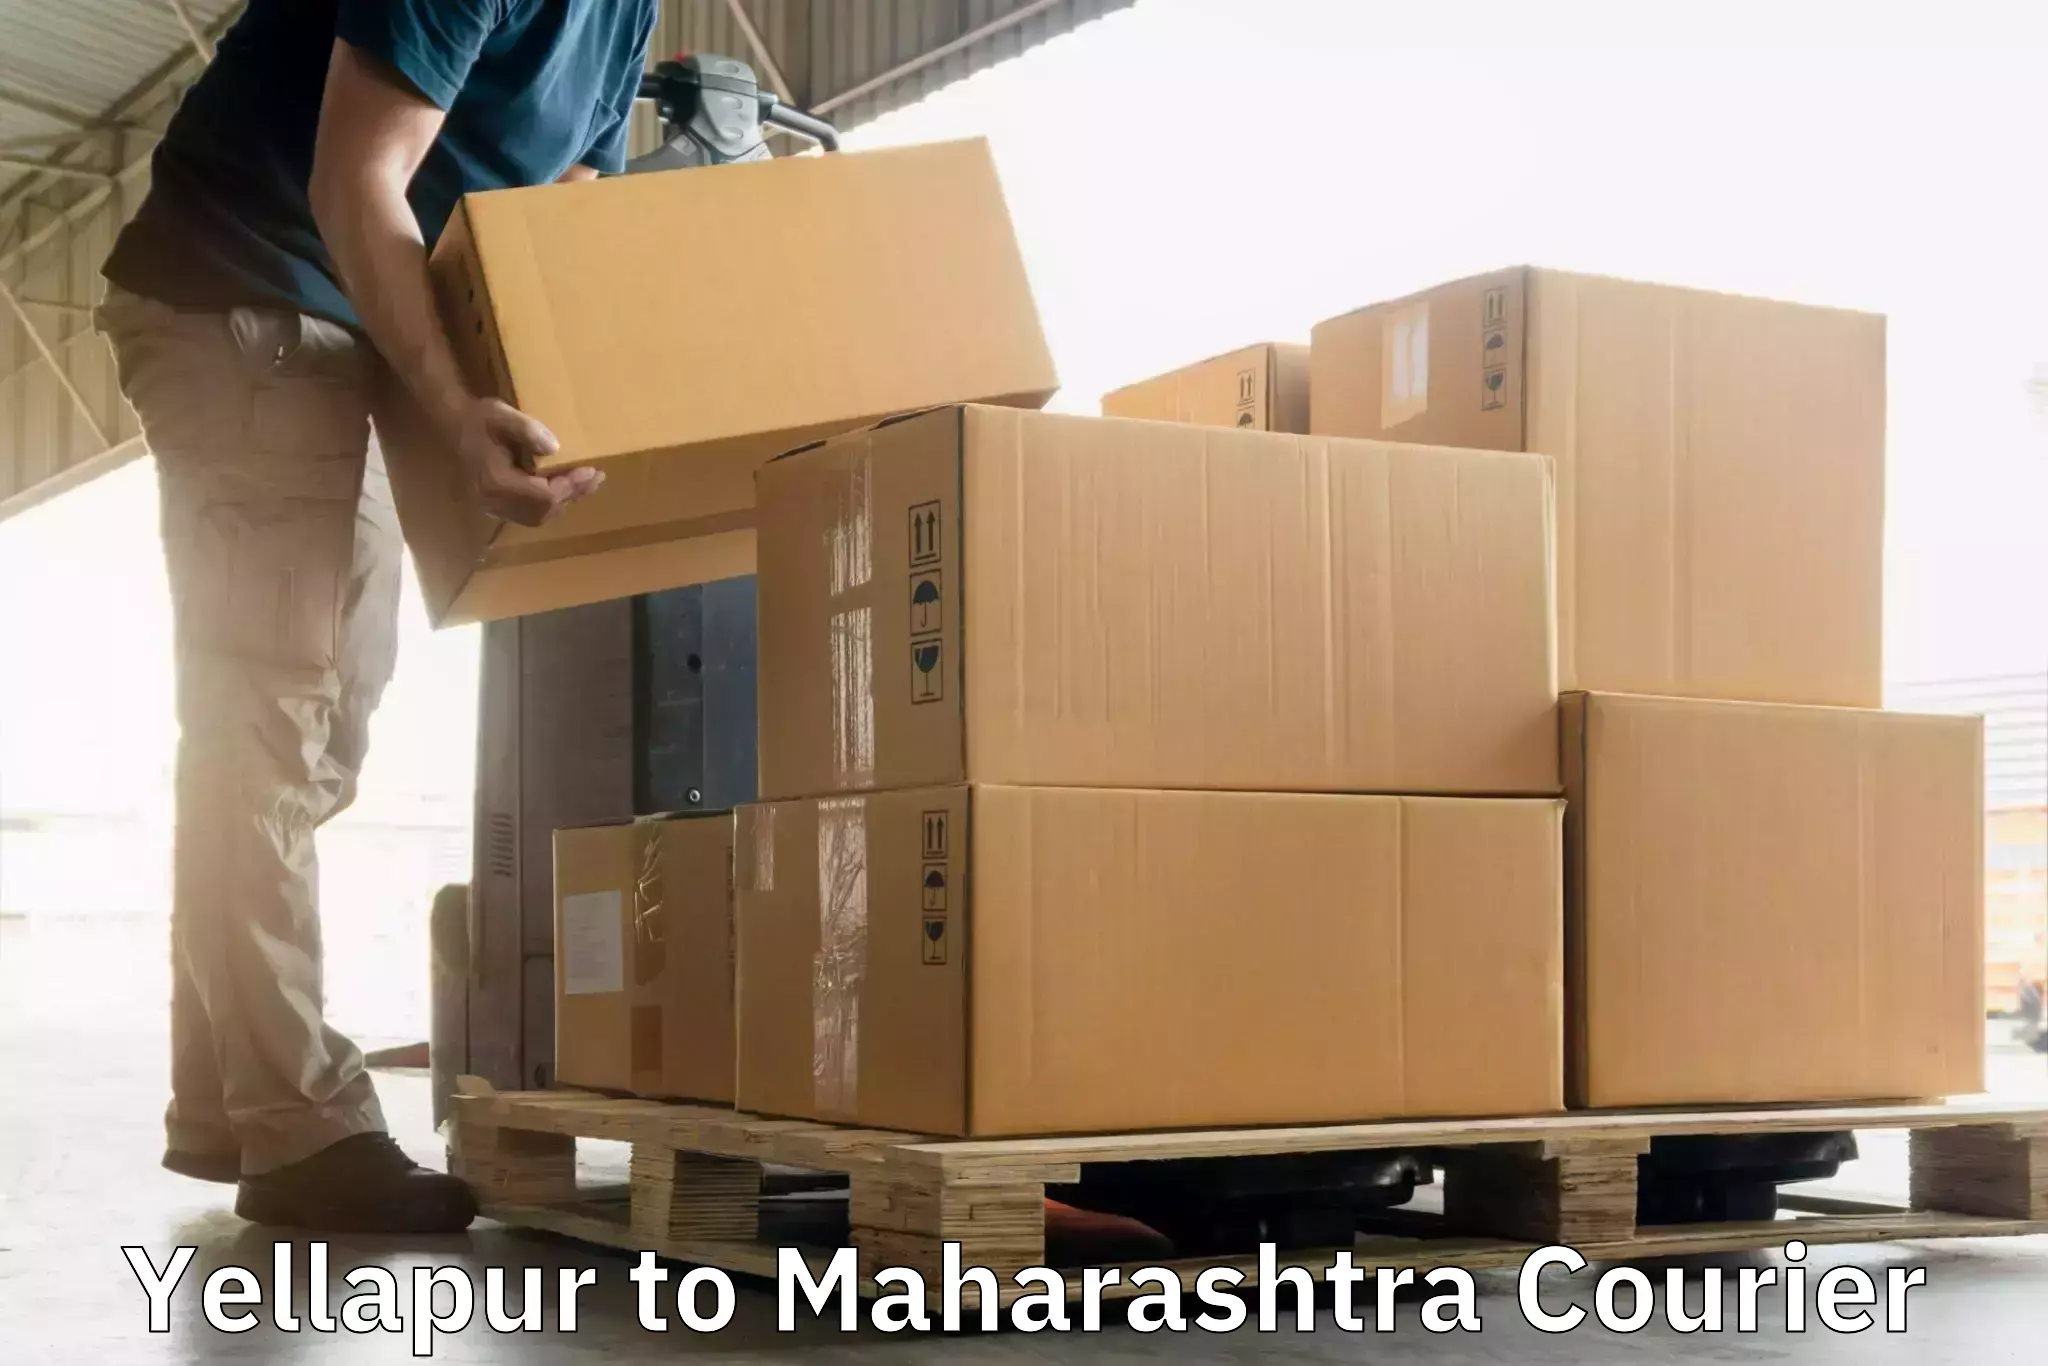 Courier service innovation Yellapur to Maharashtra